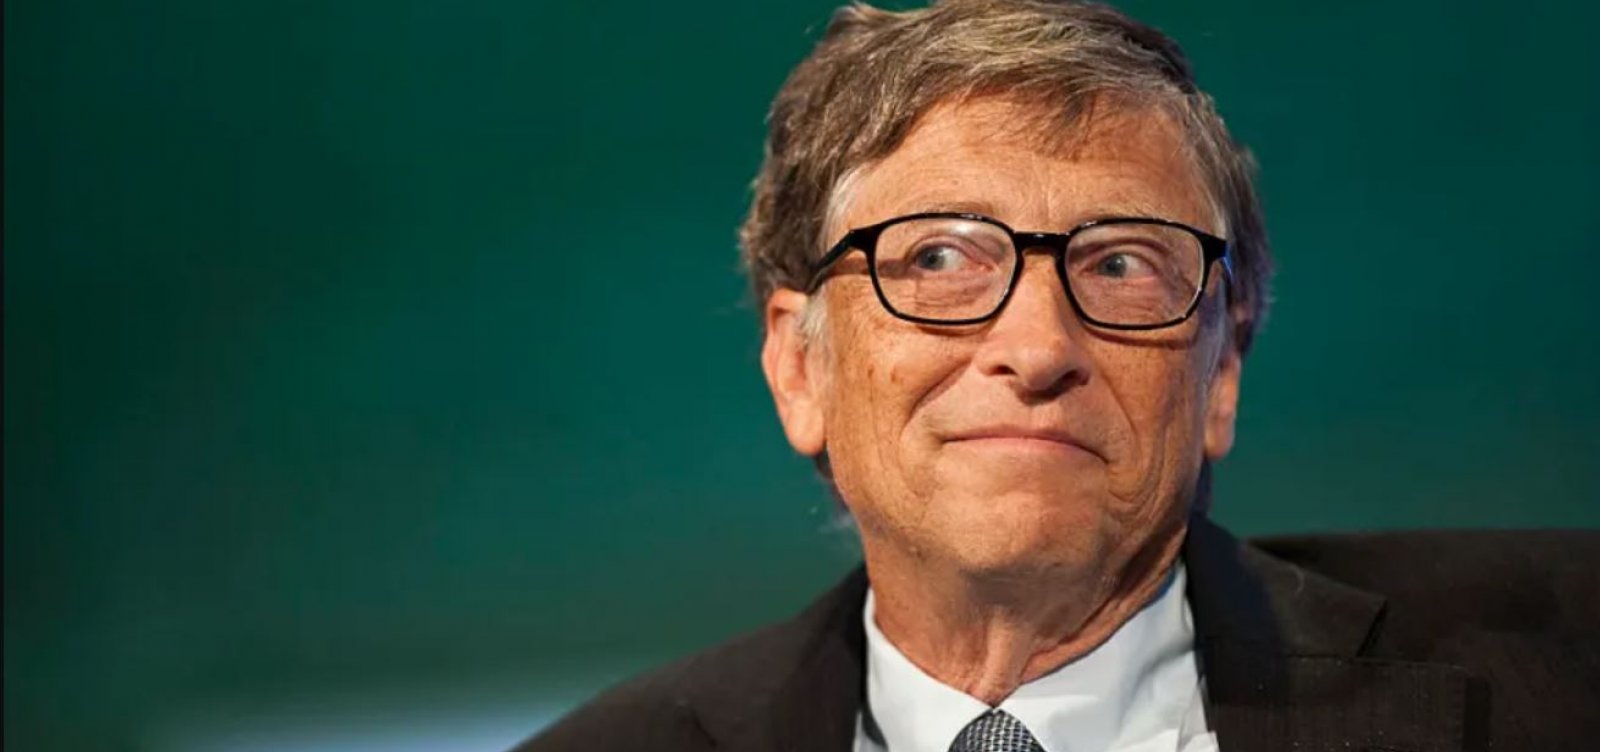 Bill Gates vê possibilidade de semana de 3 dias de trabalho com avanço da IA